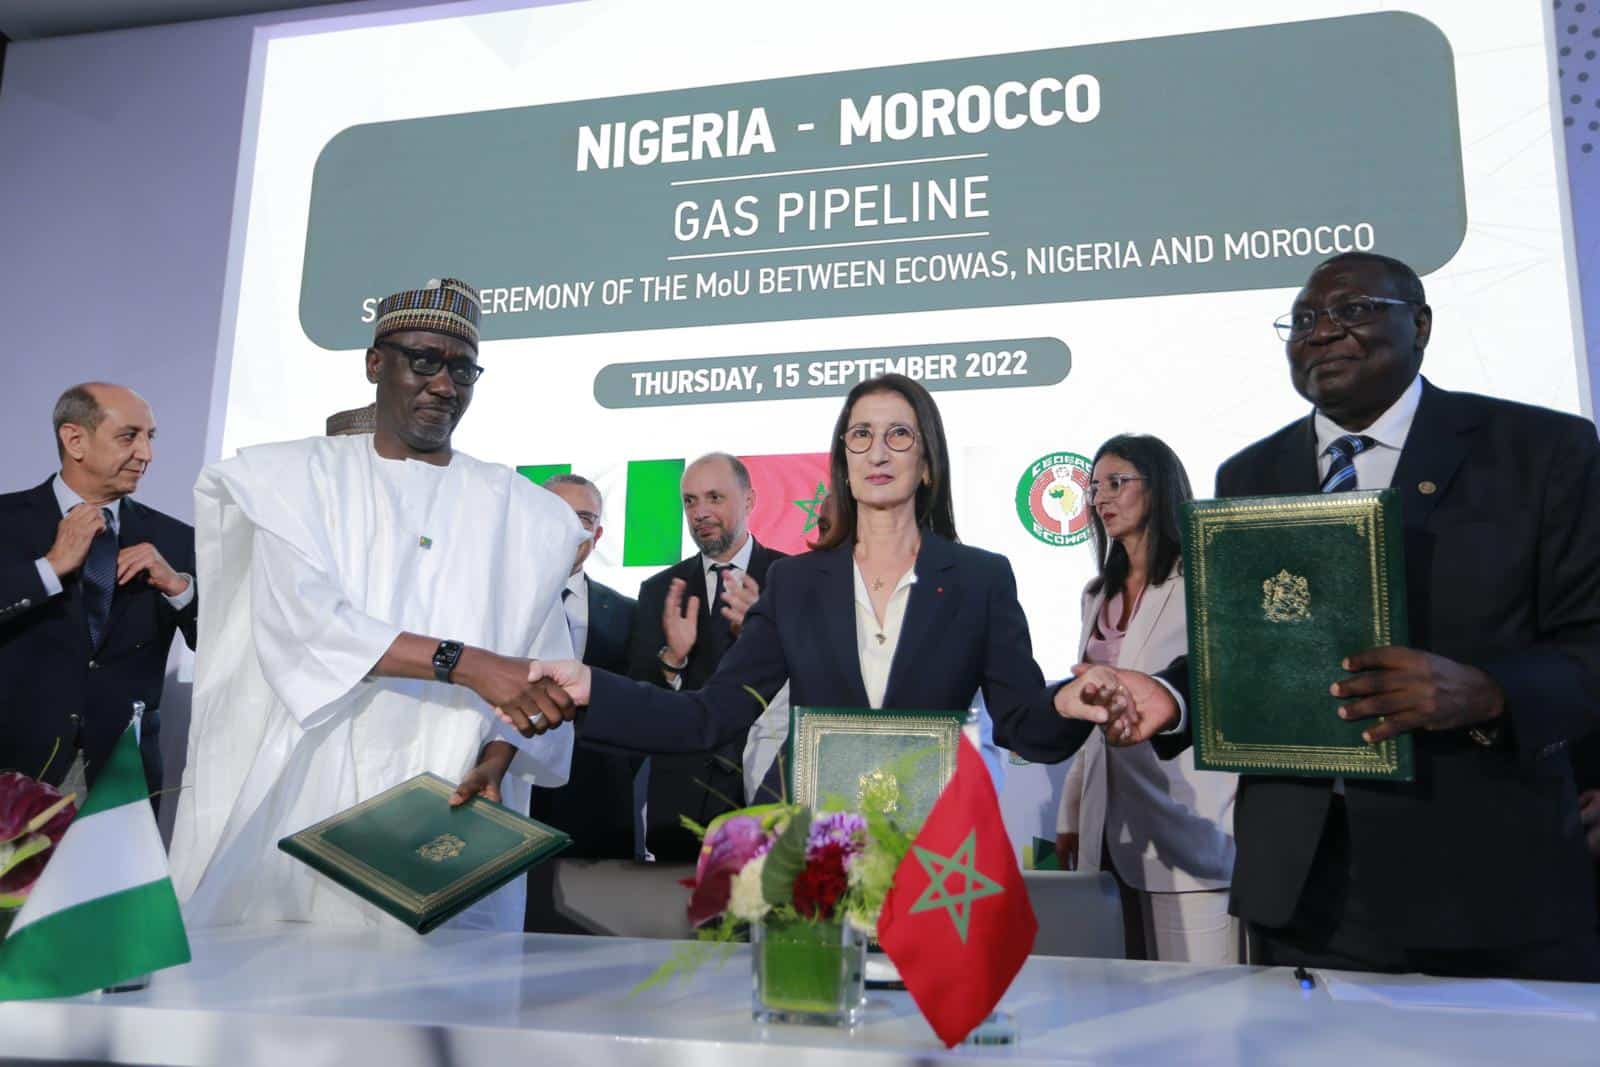 بنخضرة: 400 مليون شخص سيستفيد من خط أنبوب الغاز المغربي النيجيري